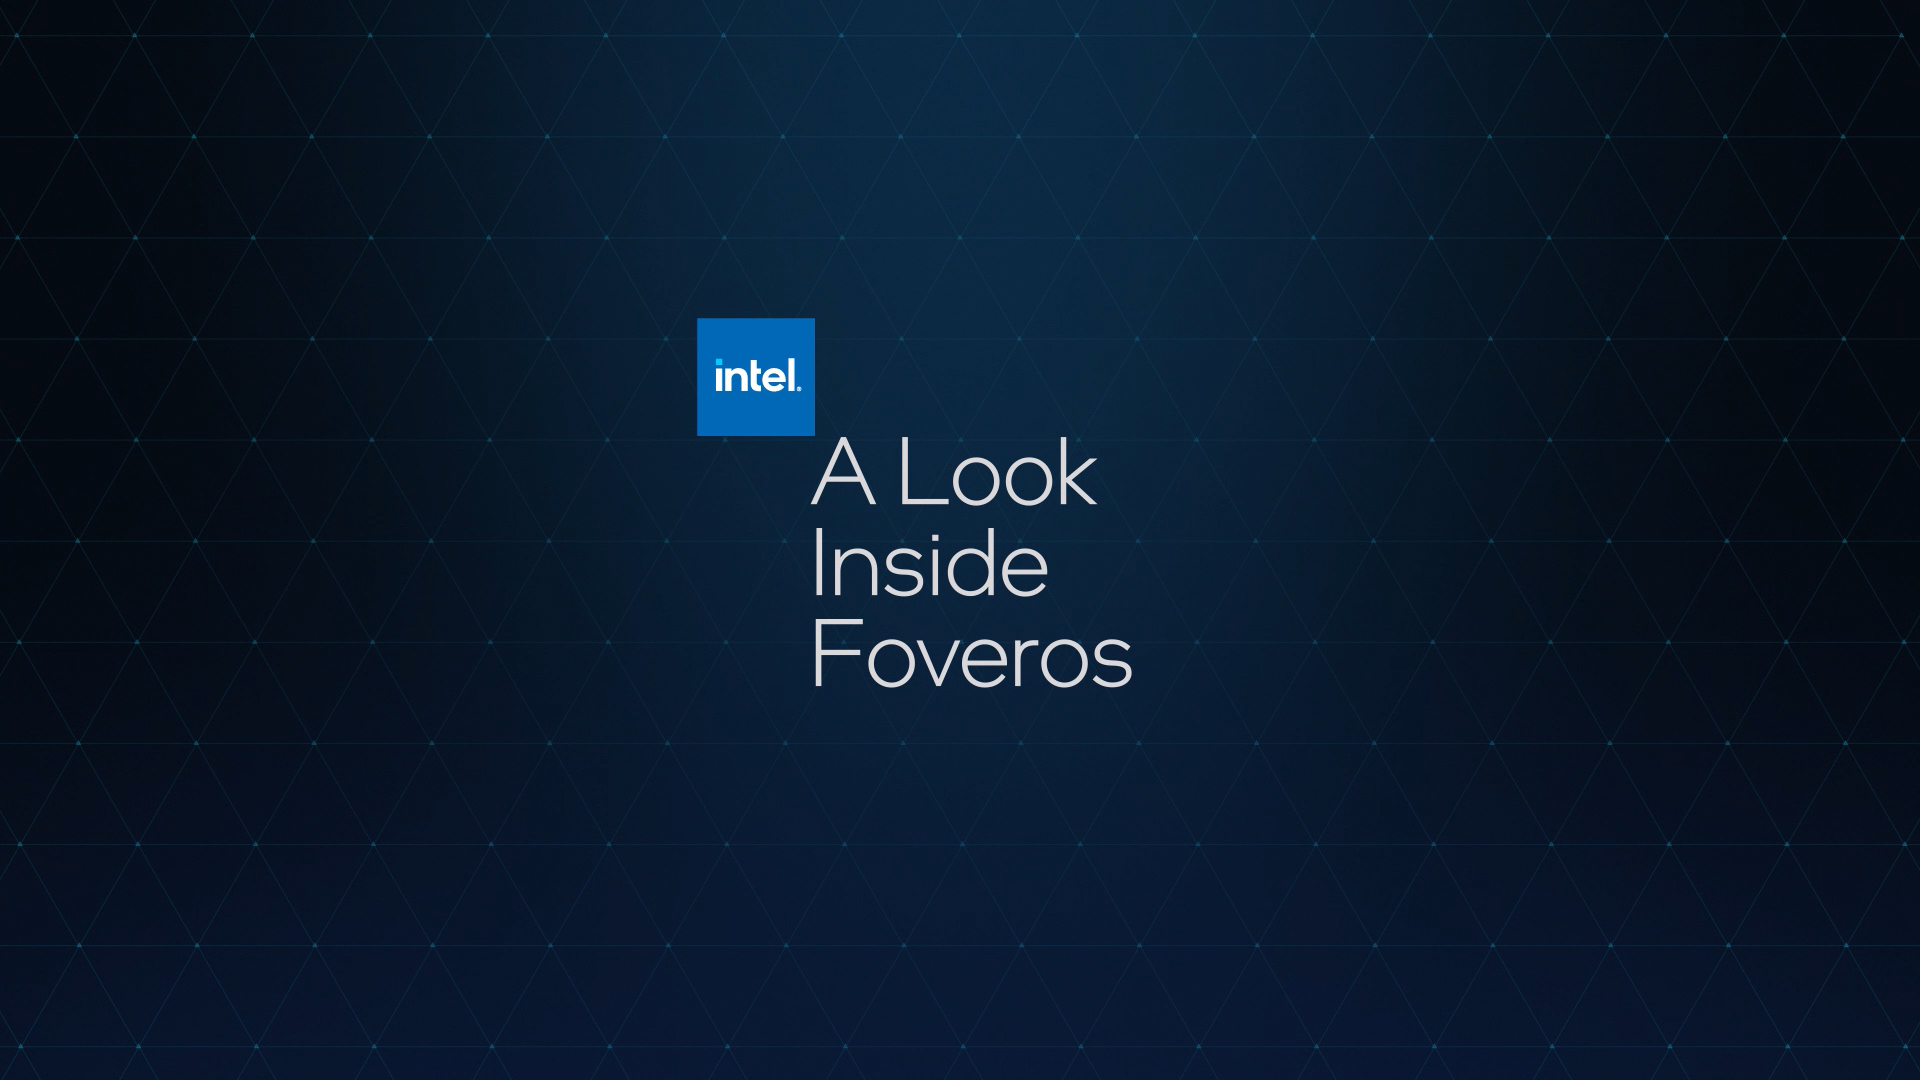 intel look inside logo